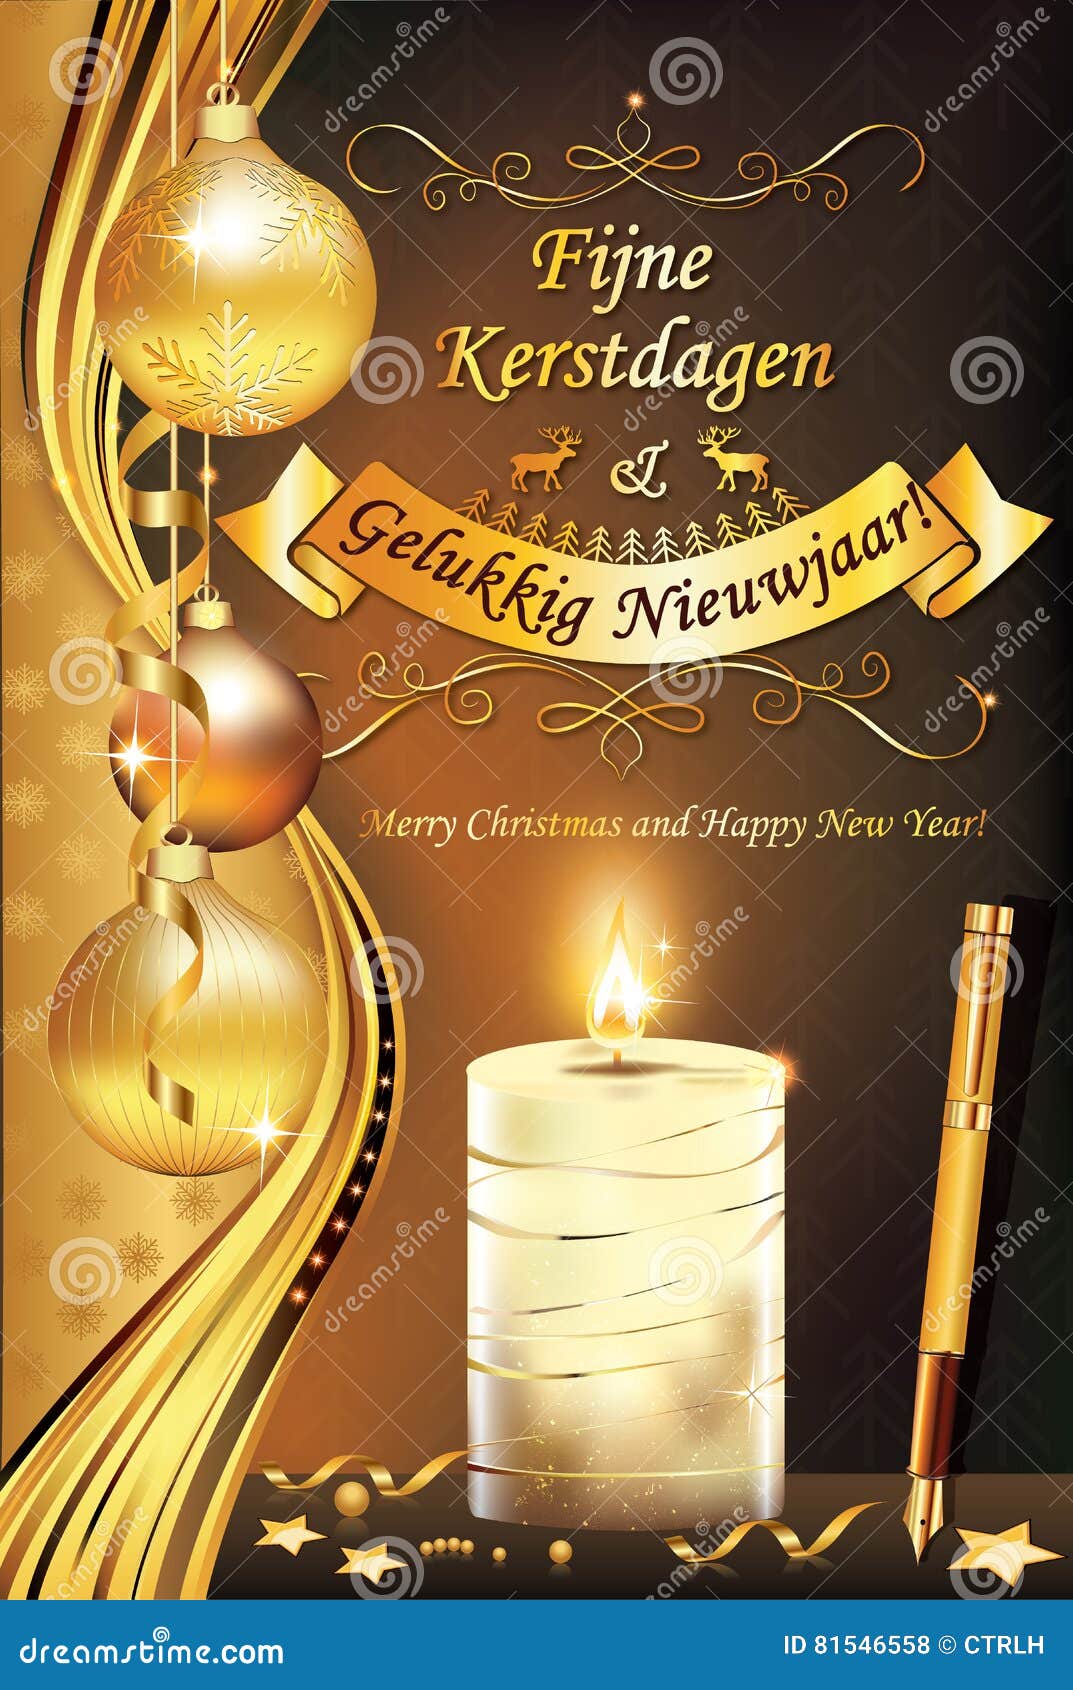 Auguri Di Buon Natale Olandese.Buon Natale E Buon Anno Nella Lingua Olandese Illustrazione Di Stock Illustrazione Di Desideri Linguaggio 81546558